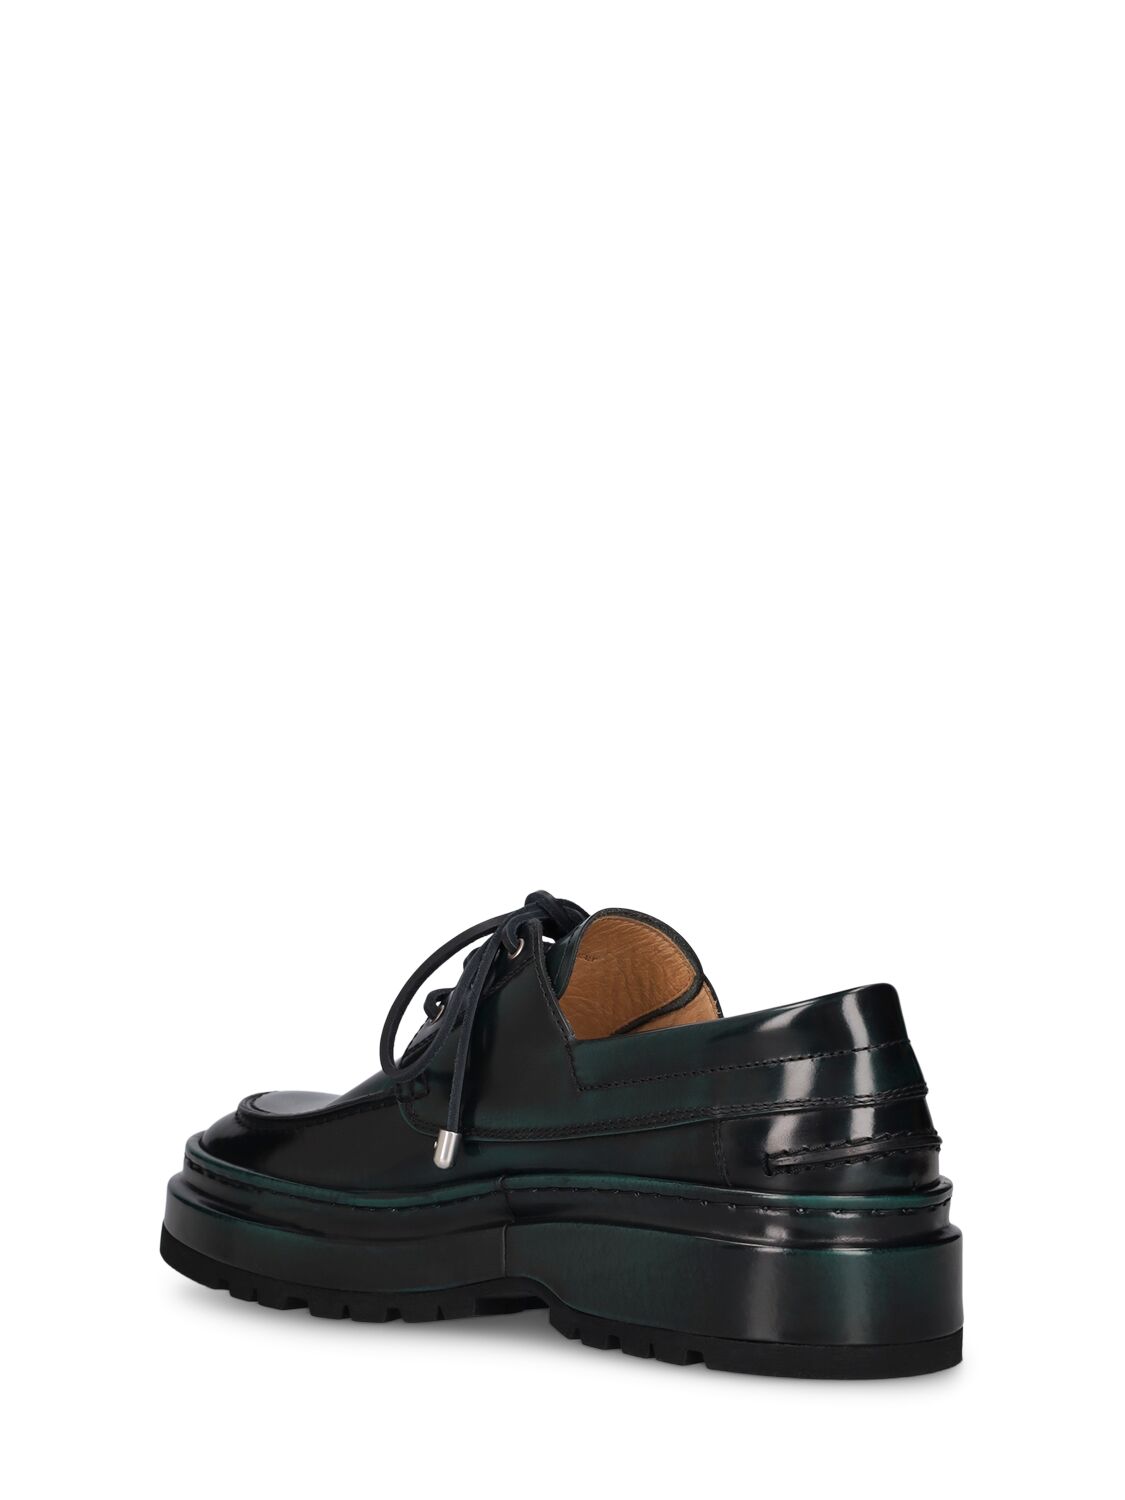 Shop Jacquemus Les Bateau Pavane Leather Lace-up Shoes In Black,green